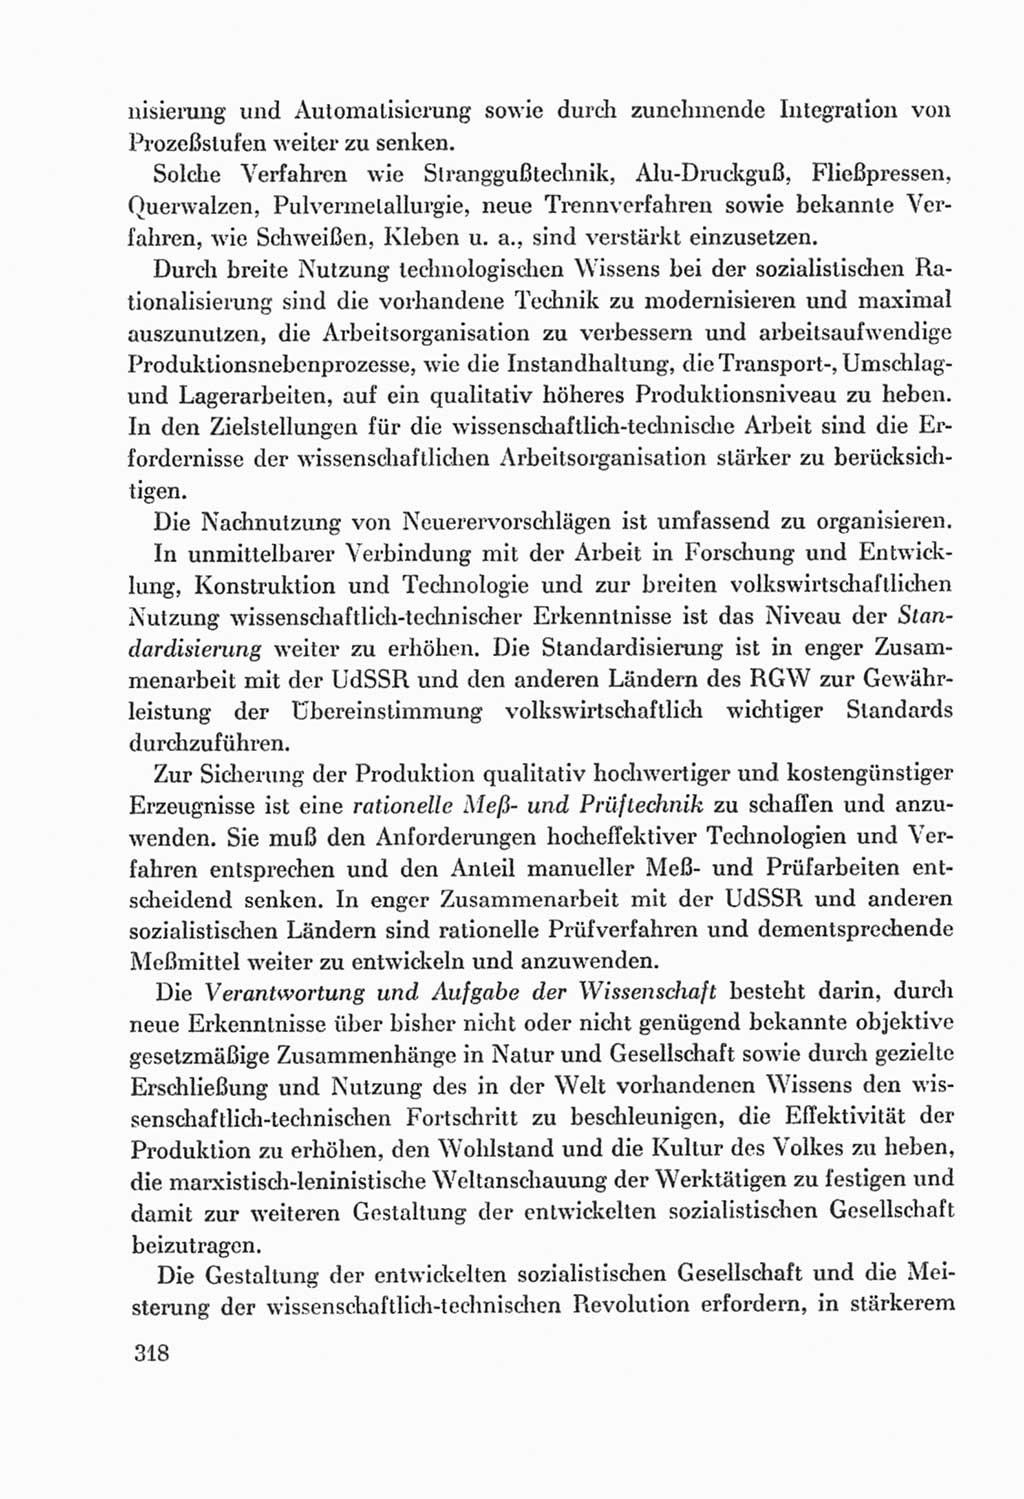 Protokoll der Verhandlungen des Ⅸ. Parteitages der Sozialistischen Einheitspartei Deutschlands (SED) [Deutsche Demokratische Republik (DDR)] 1976, Band 2, Seite 318 (Prot. Verh. Ⅸ. PT SED DDR 1976, Bd. 2, S. 318)